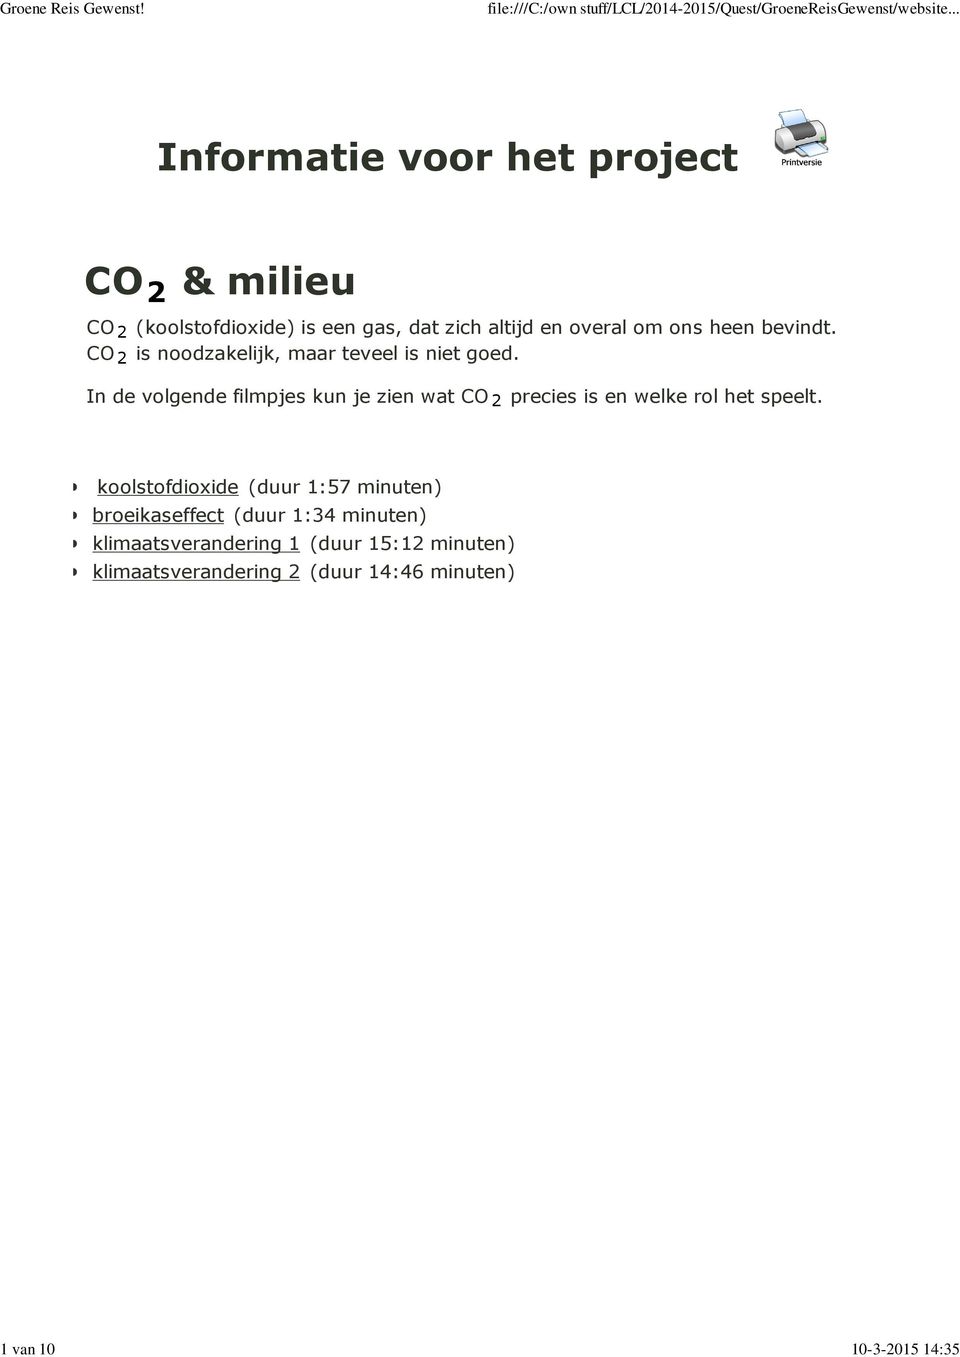 In de volgende filmpjes kun je zien wat CO 2 precies is en welke rol het speelt.